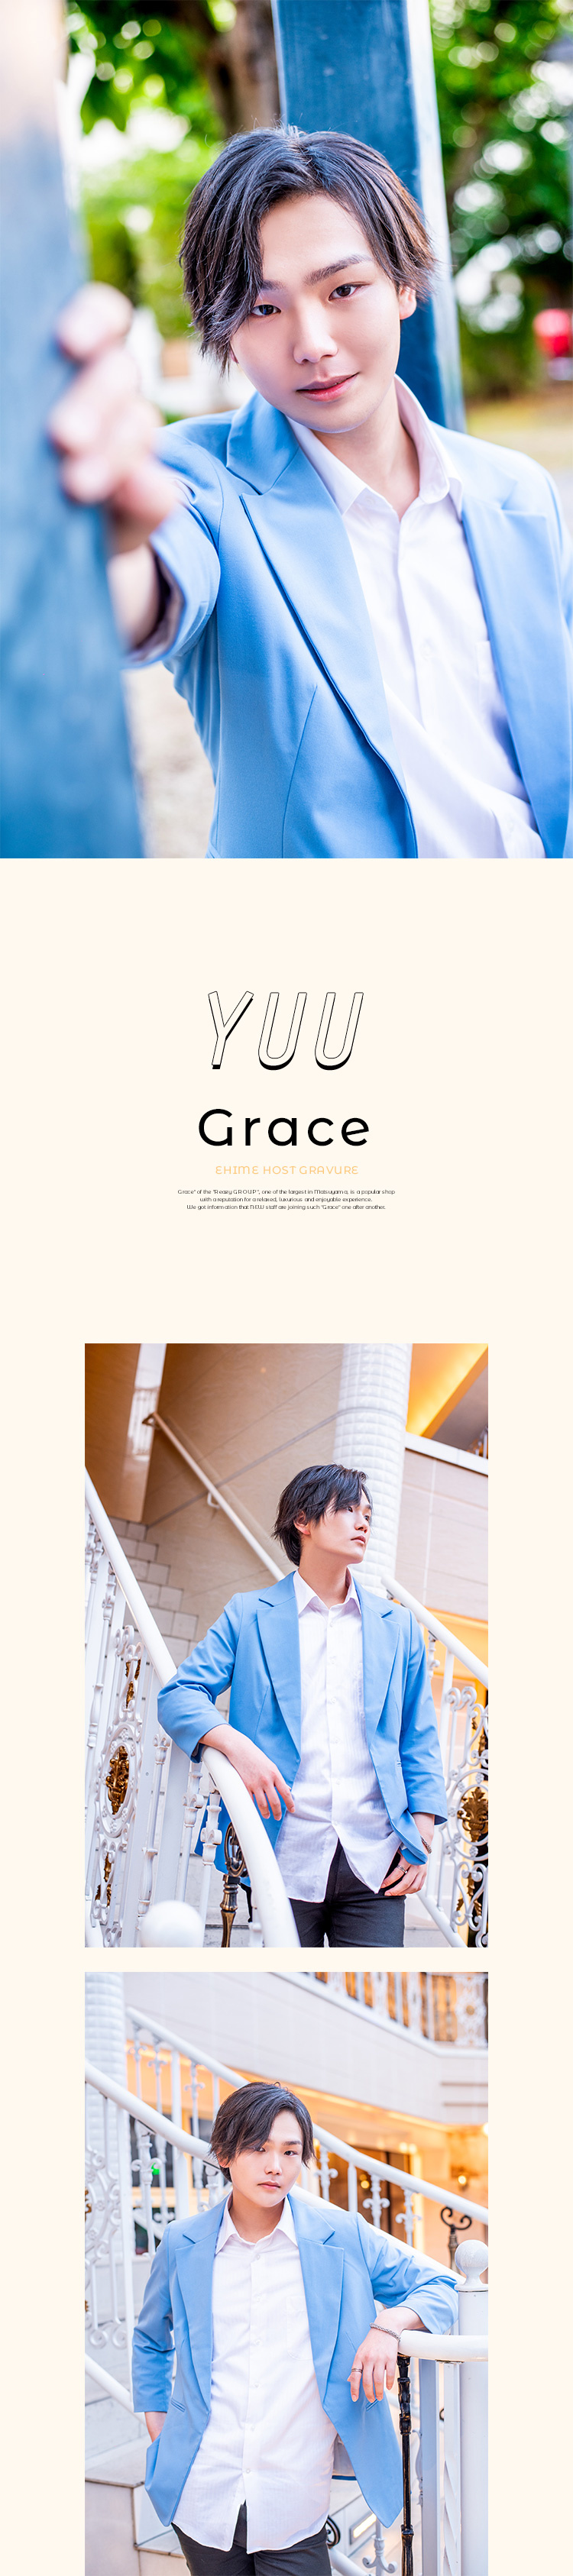 「Grace」期待の新人･佑くんのピングラビア☆